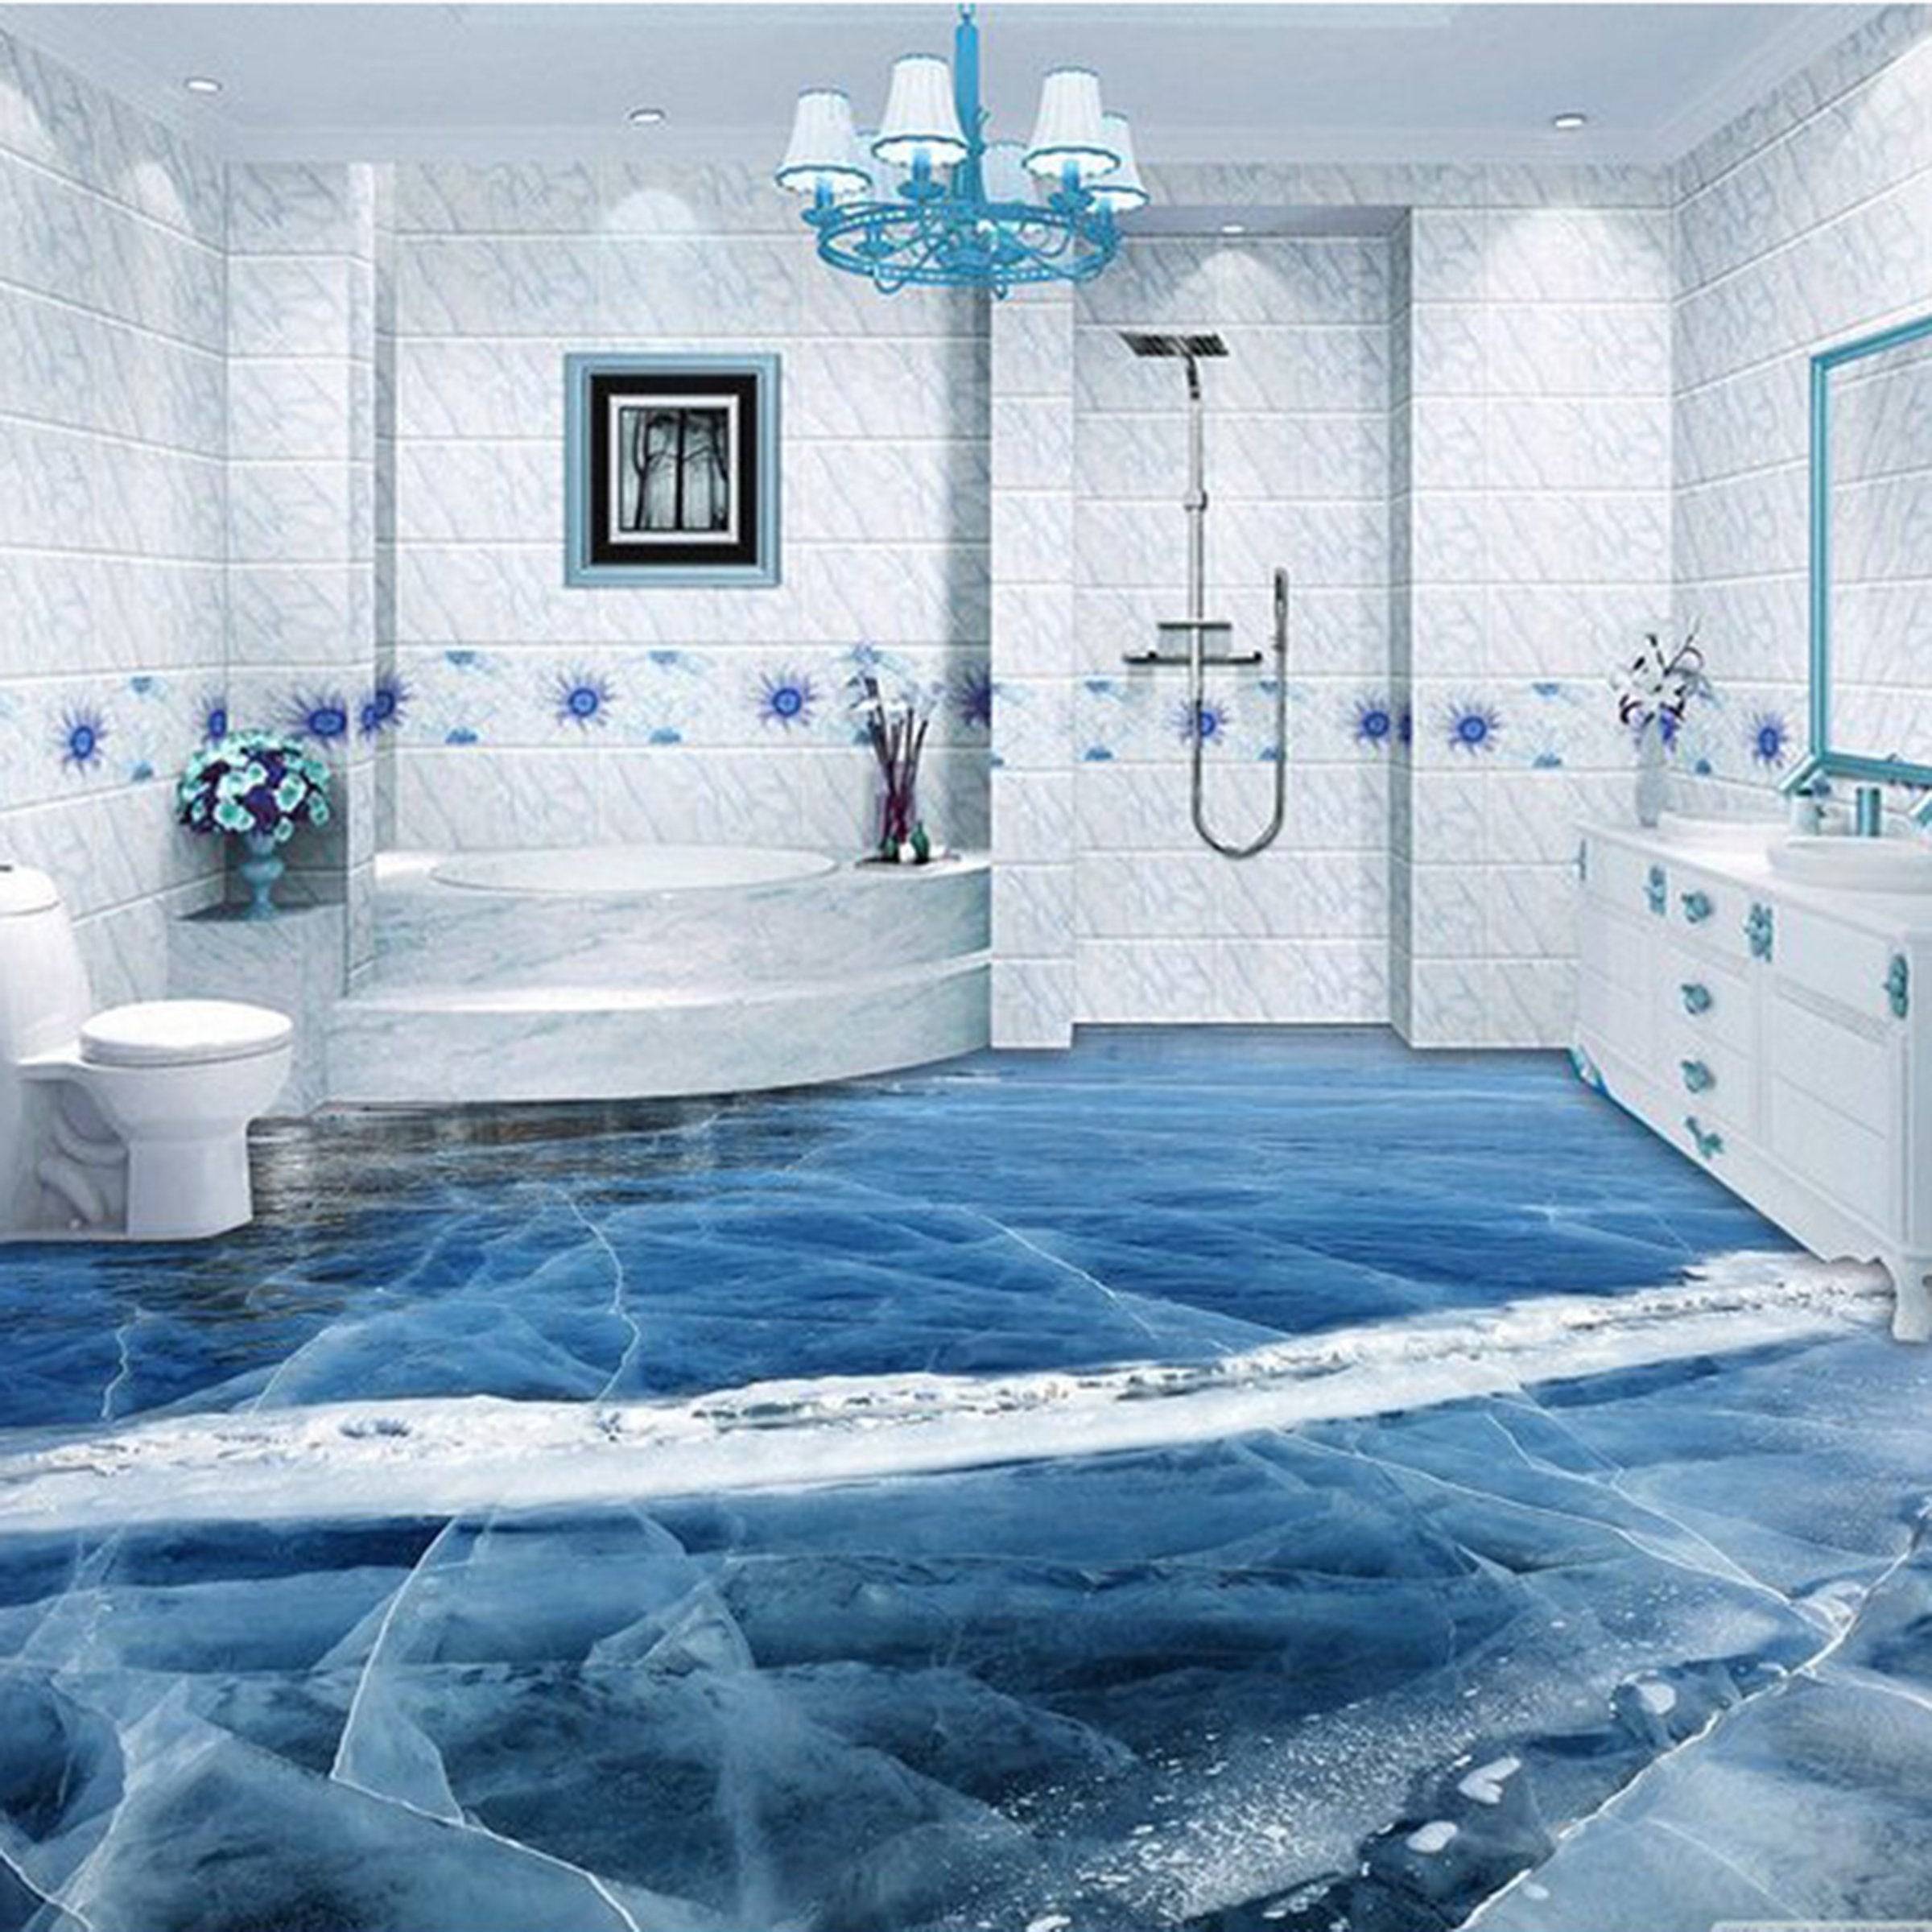 Как выбрать влагостойкие обои для ванной комнаты непромокаемые и моющиеся? Обзор